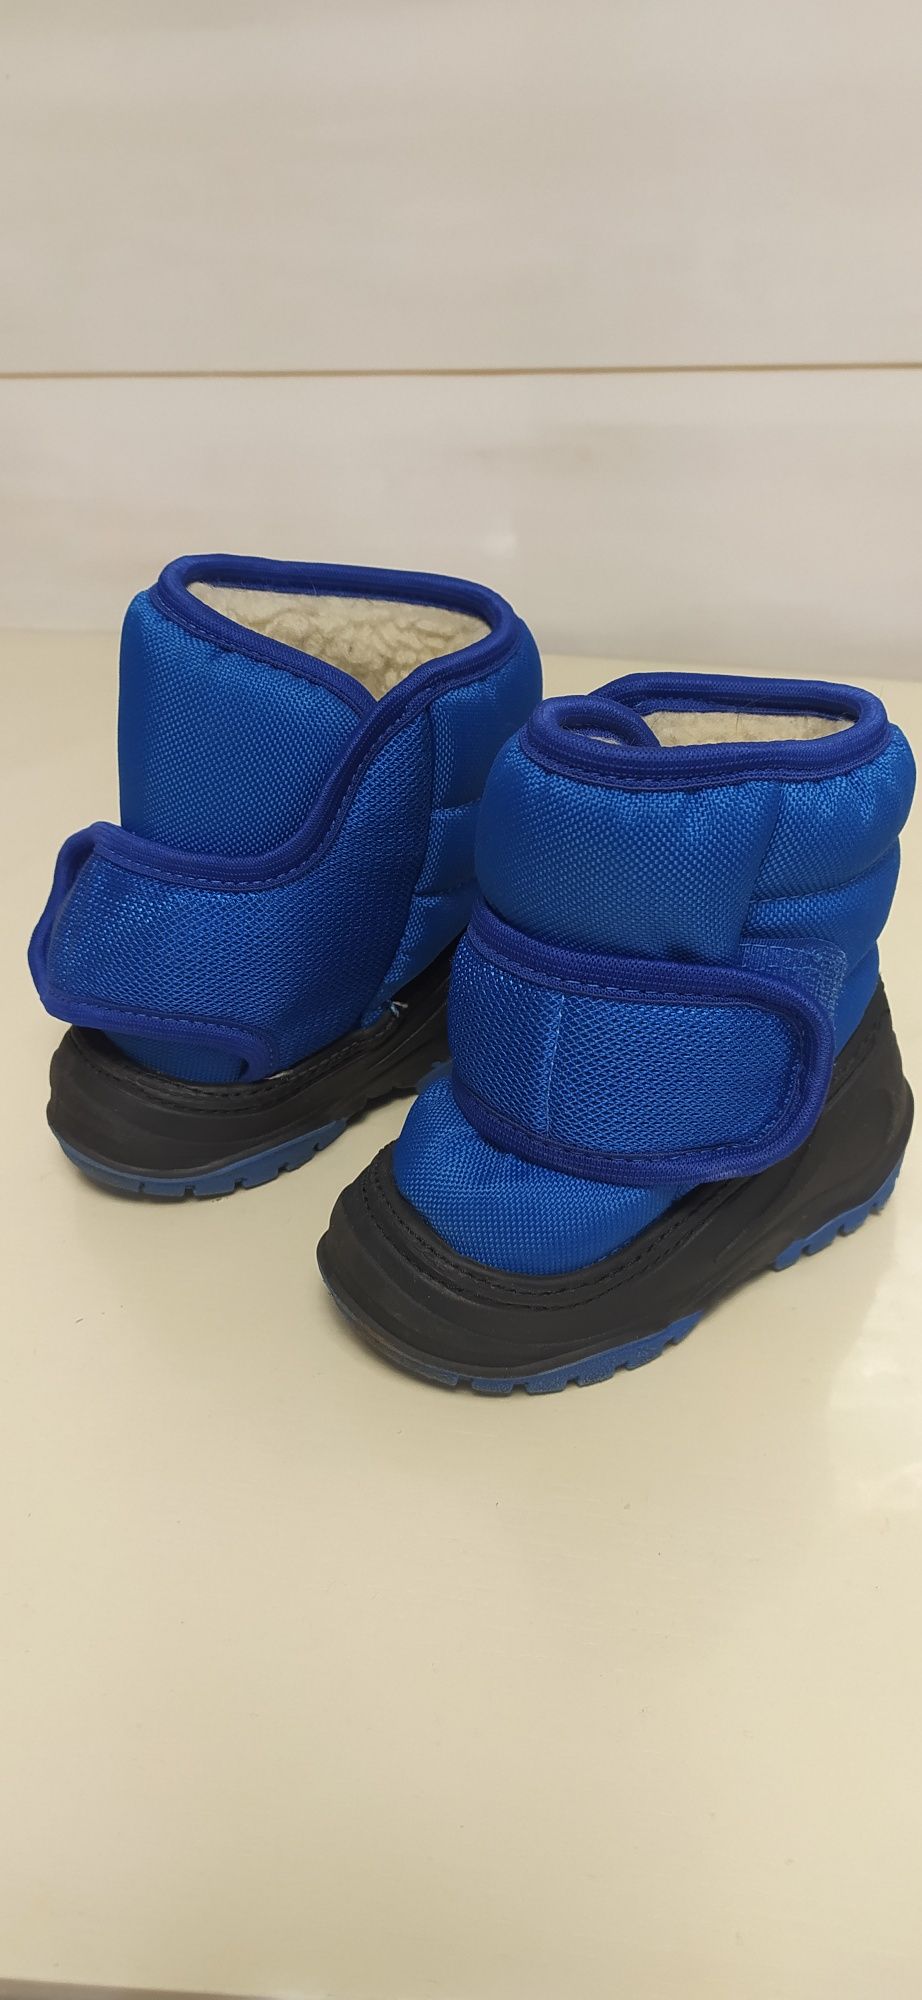 Зимние сапоги / ботинки детские непромокаемые  (до -25С)